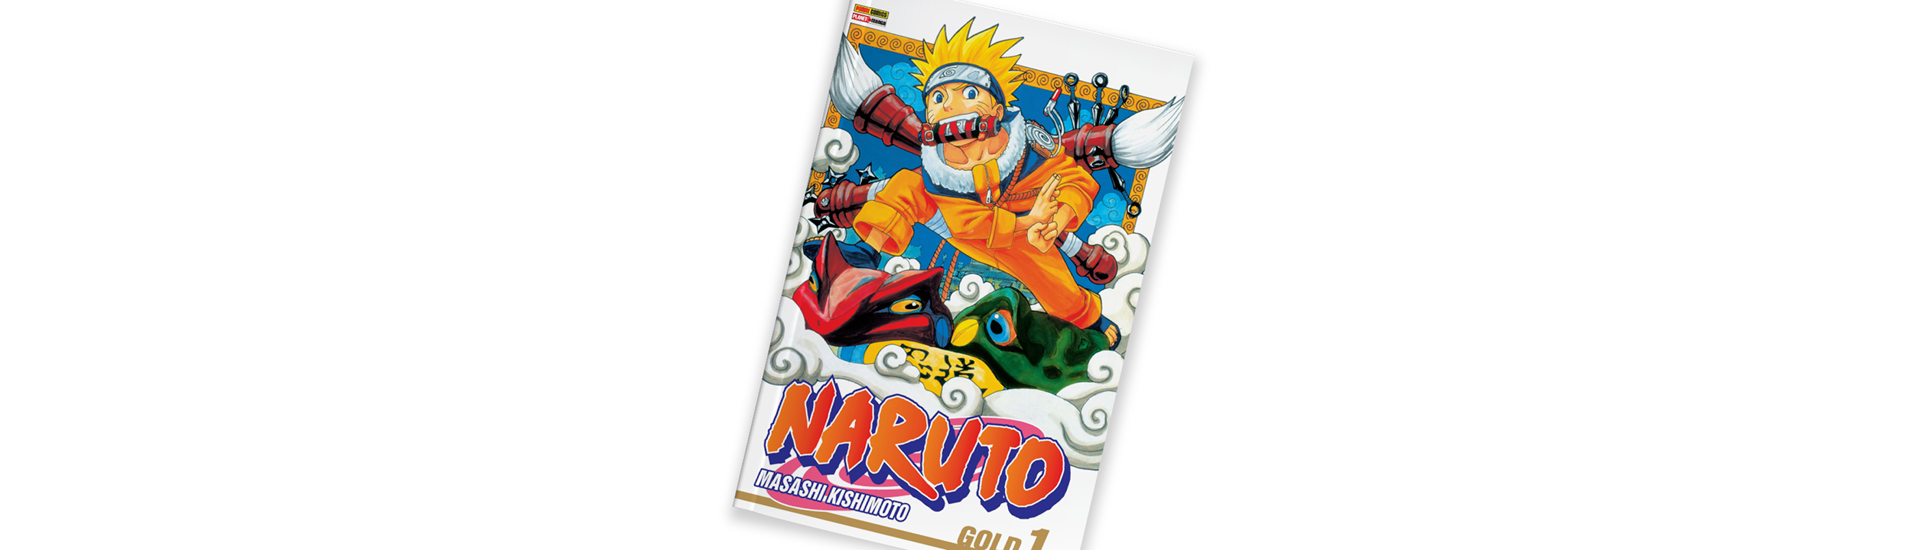 Capa do mangá 'Naruto', de Masashi Kishimoto, em fundo branco.